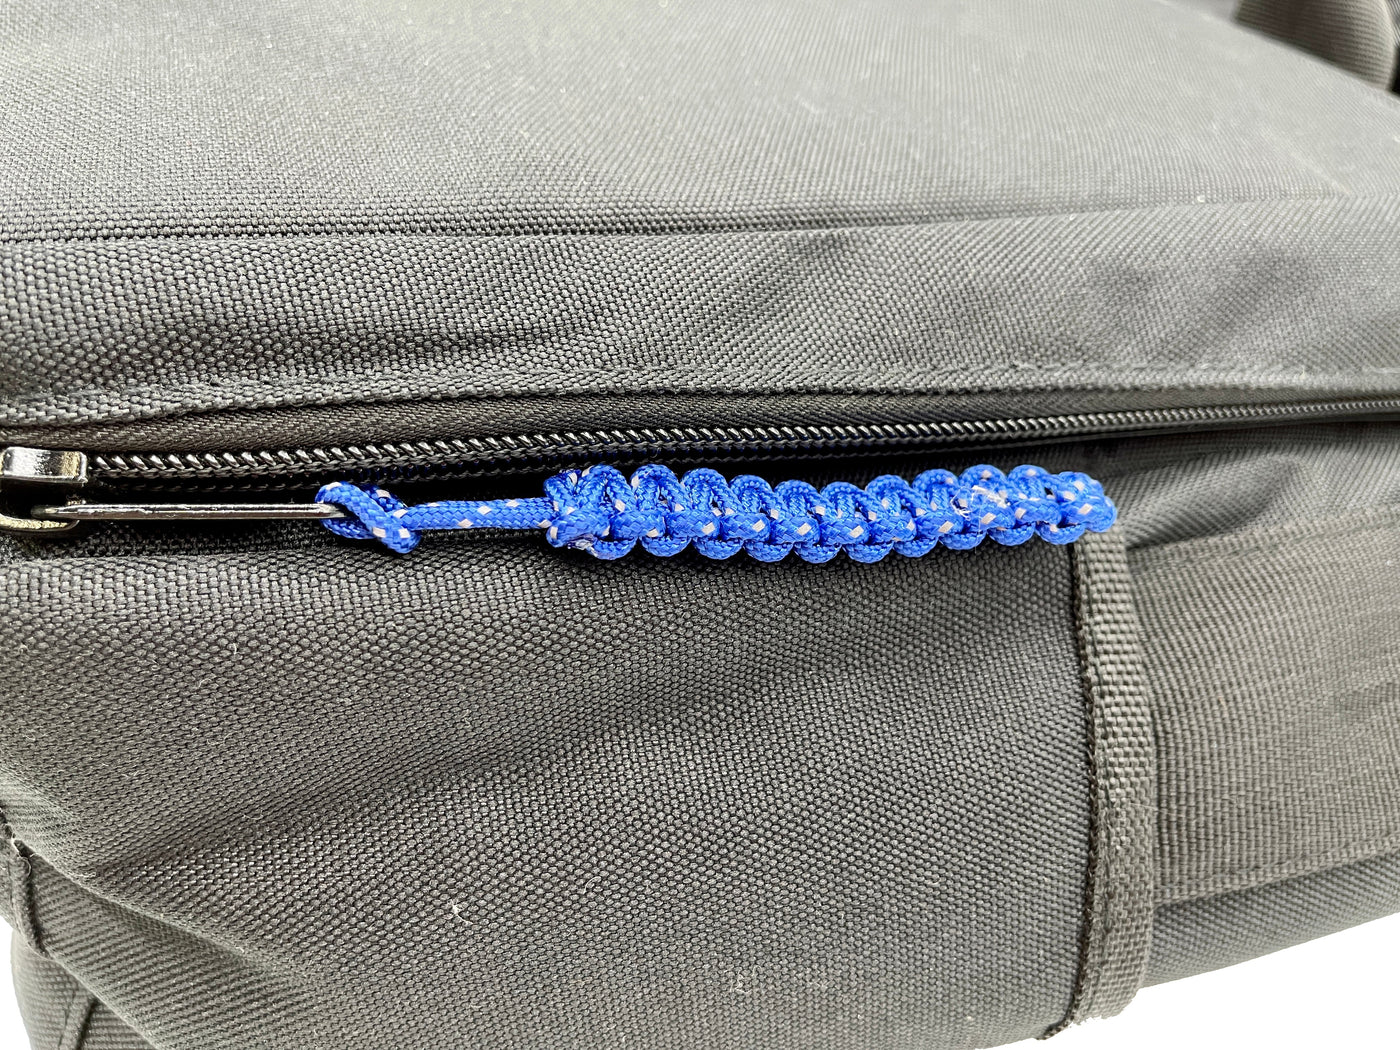 Cobra Knot Zipper Pull ( 5 Pack )